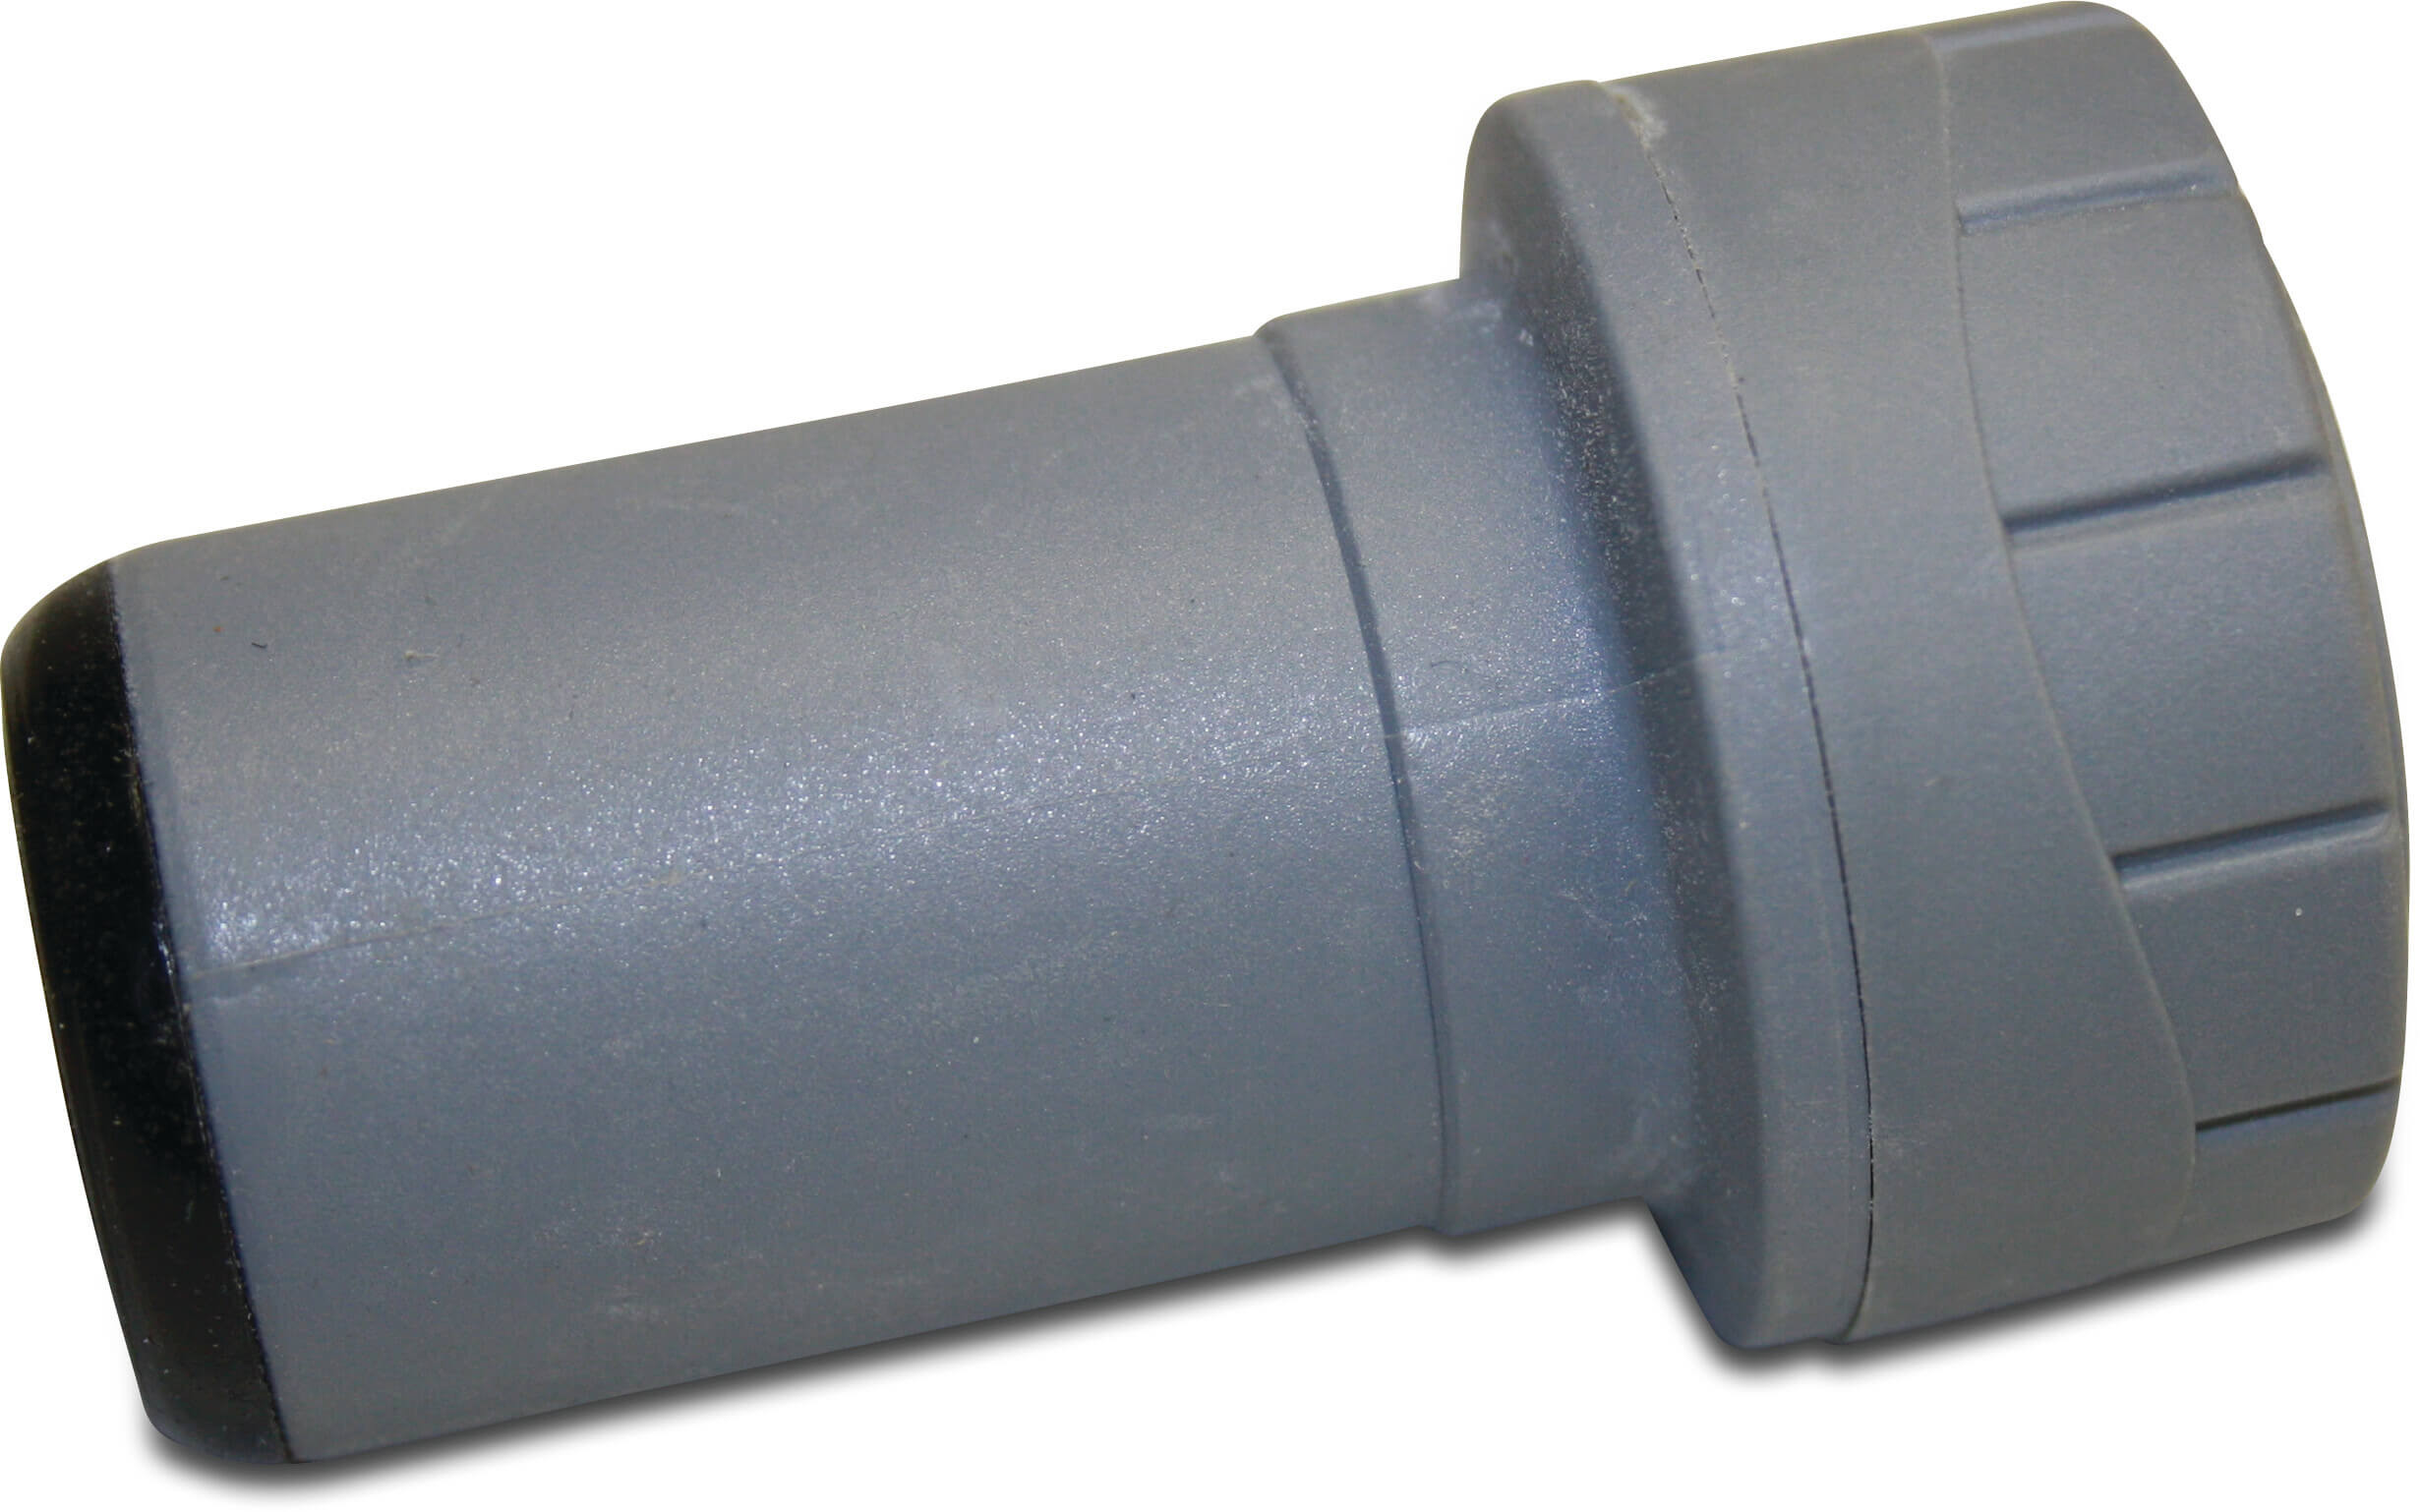 Twin-Rohr reduzierkupplung Polybutylen 28 mm x 22 mm Einsteck Grau